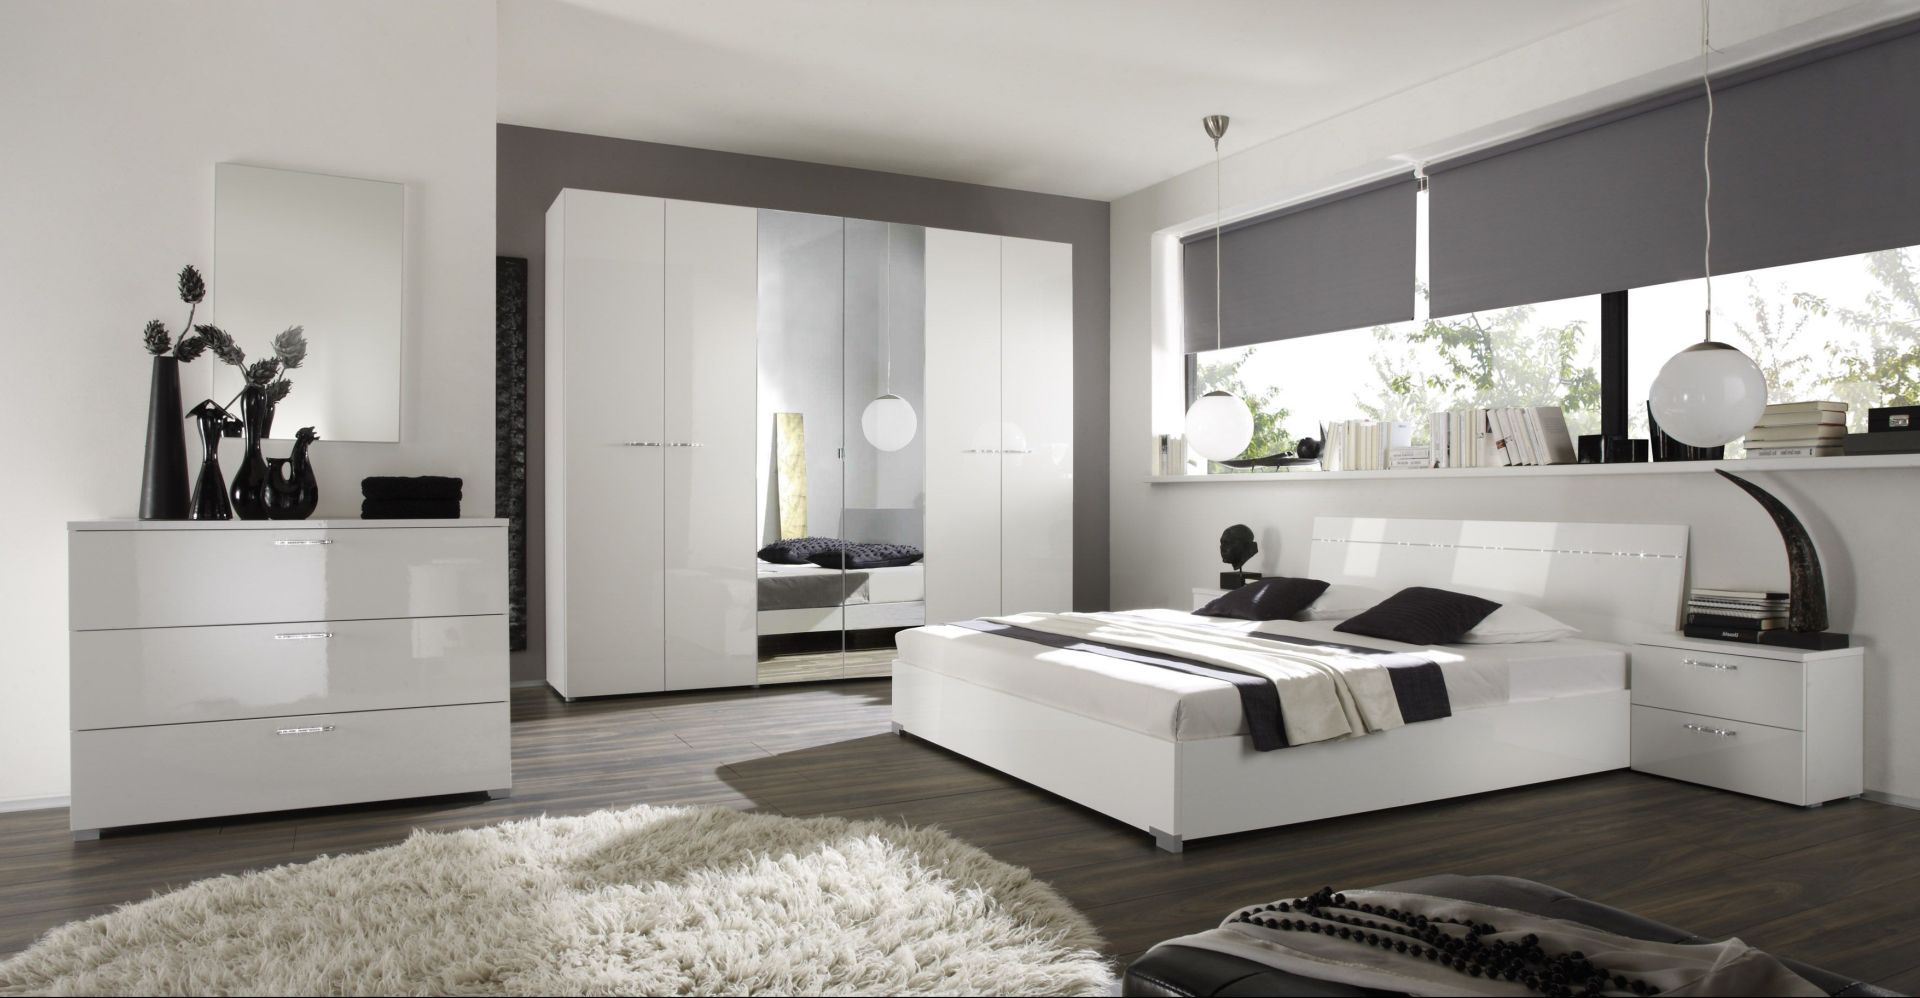 Połączenie bieli z czernią to najmodniejsza kompozycja dla każdej nowoczesnej sypialni. Zestaw mebli sypialnianych Siena Stolwit kryje w sobie prostotę i minimalizm, ozdobione niepowtarzalnym ornamentem. Fot. MC Akcent